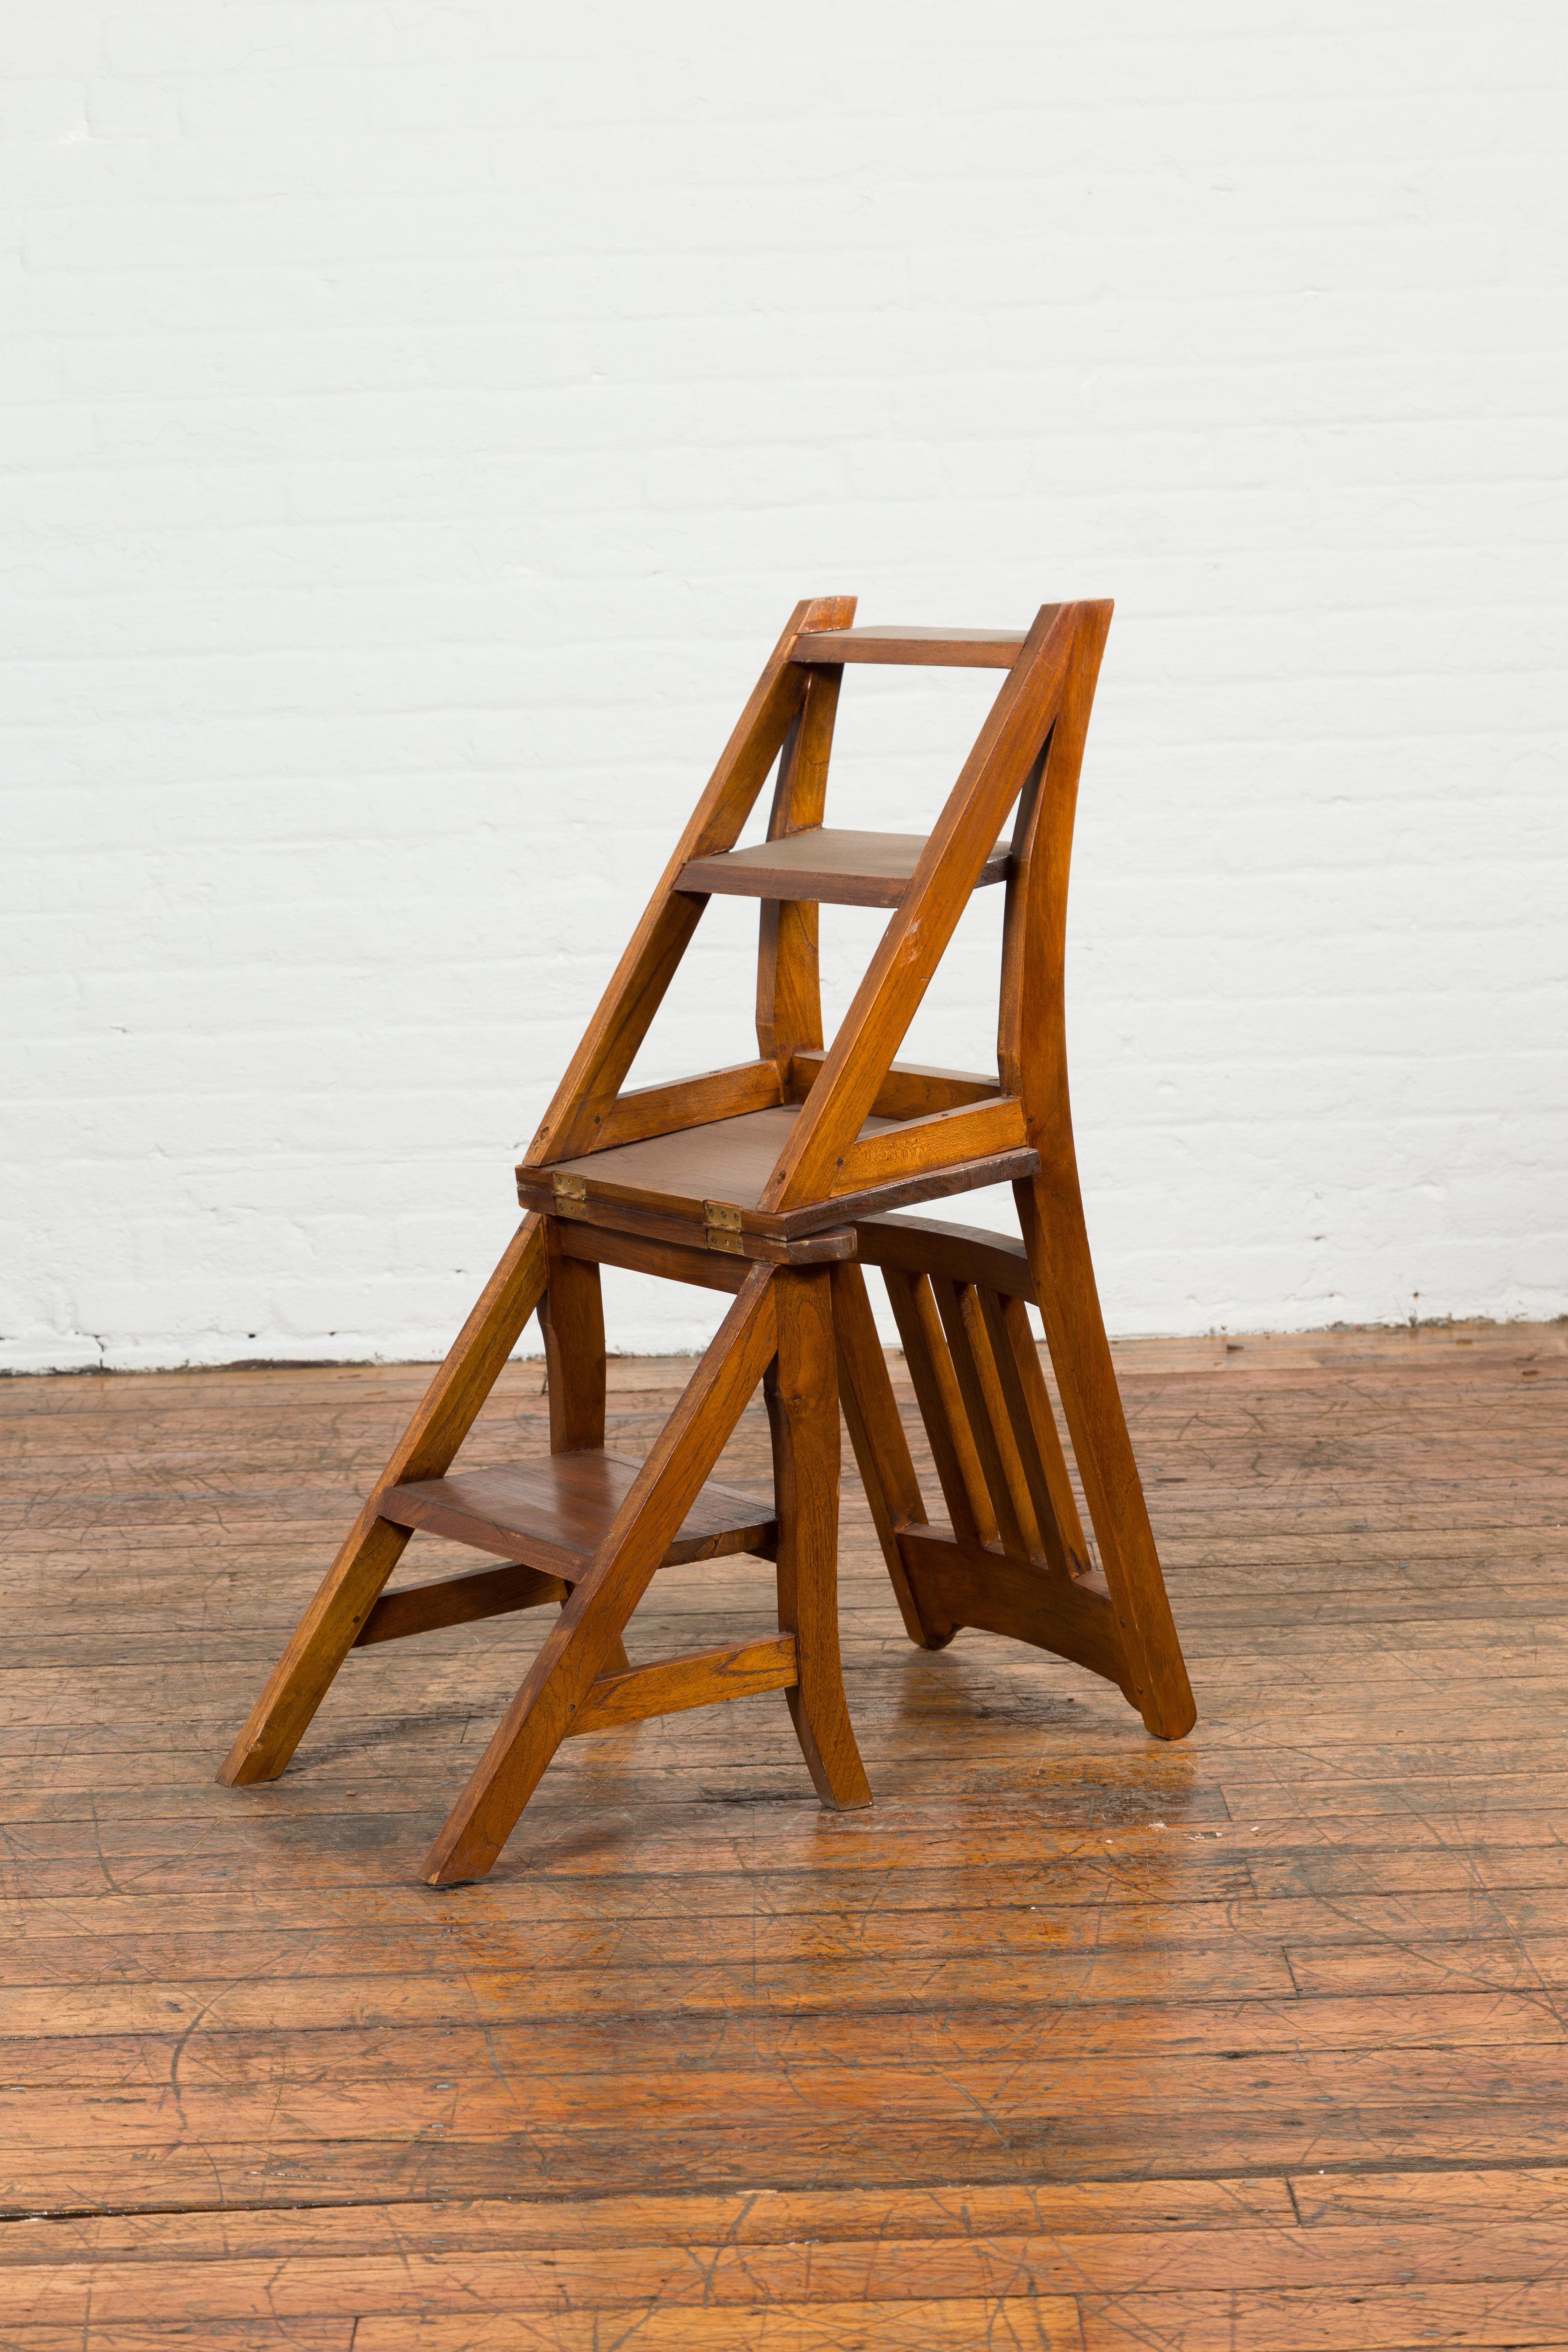 Ein alter indischer metamorpher Holzleiterstuhl aus der Mitte des 20. Jahrhunderts. Dieser bequeme Stuhl wurde in der Mitte des Jahrhunderts in Indien hergestellt und zeichnet sich durch eine schräge Rückenlehne aus, die in die Hinterbeine übergeht.